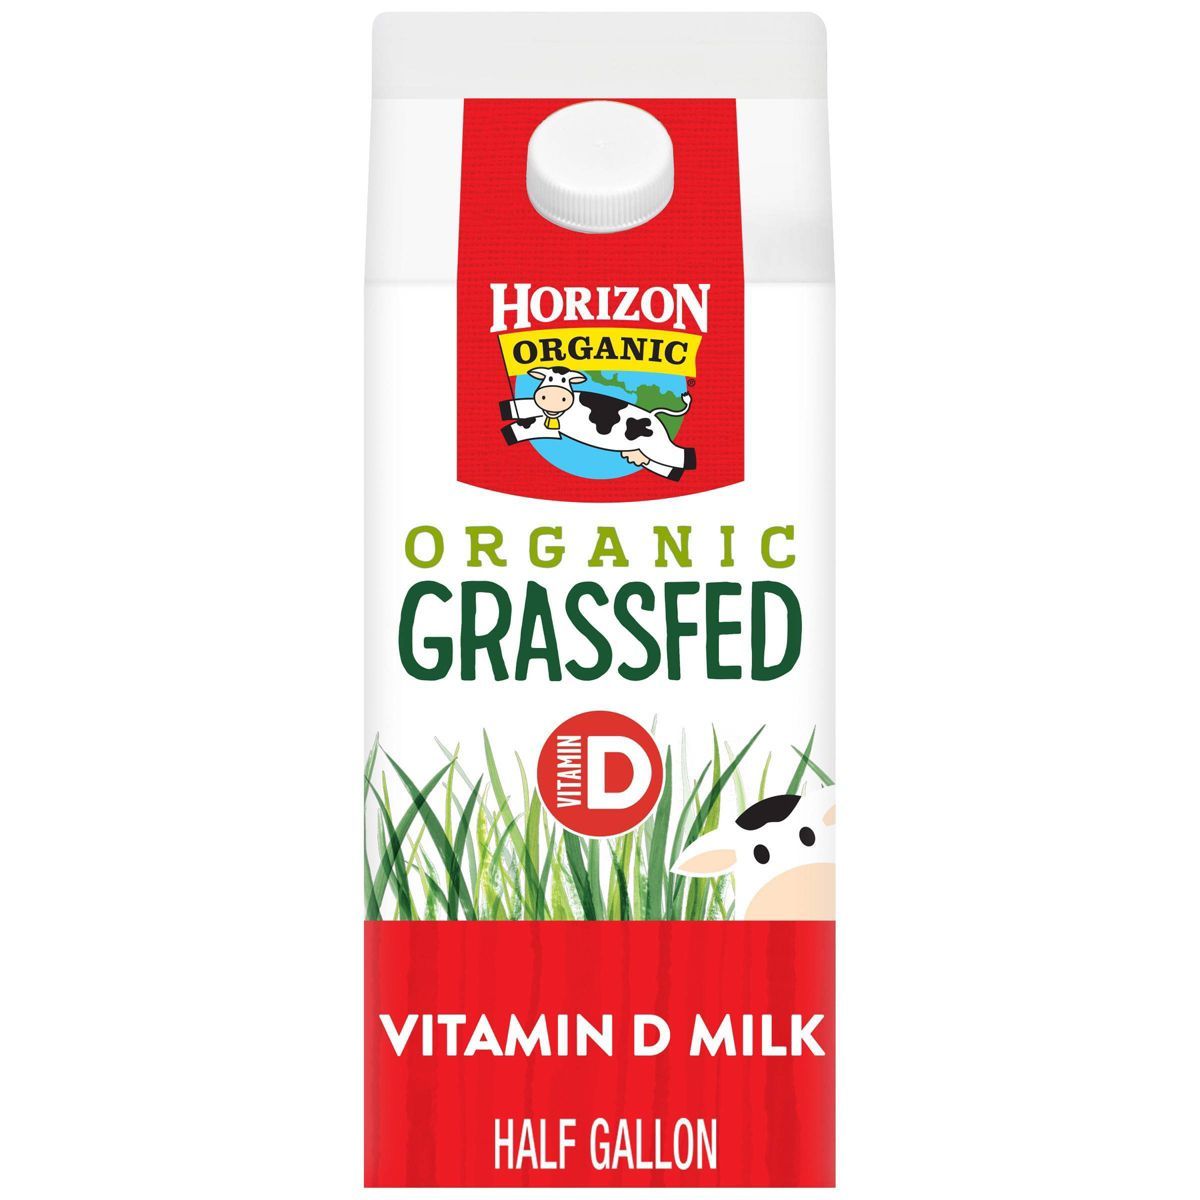 Horizon Organic Whole Grassfed Milk - 0.5gal | Target